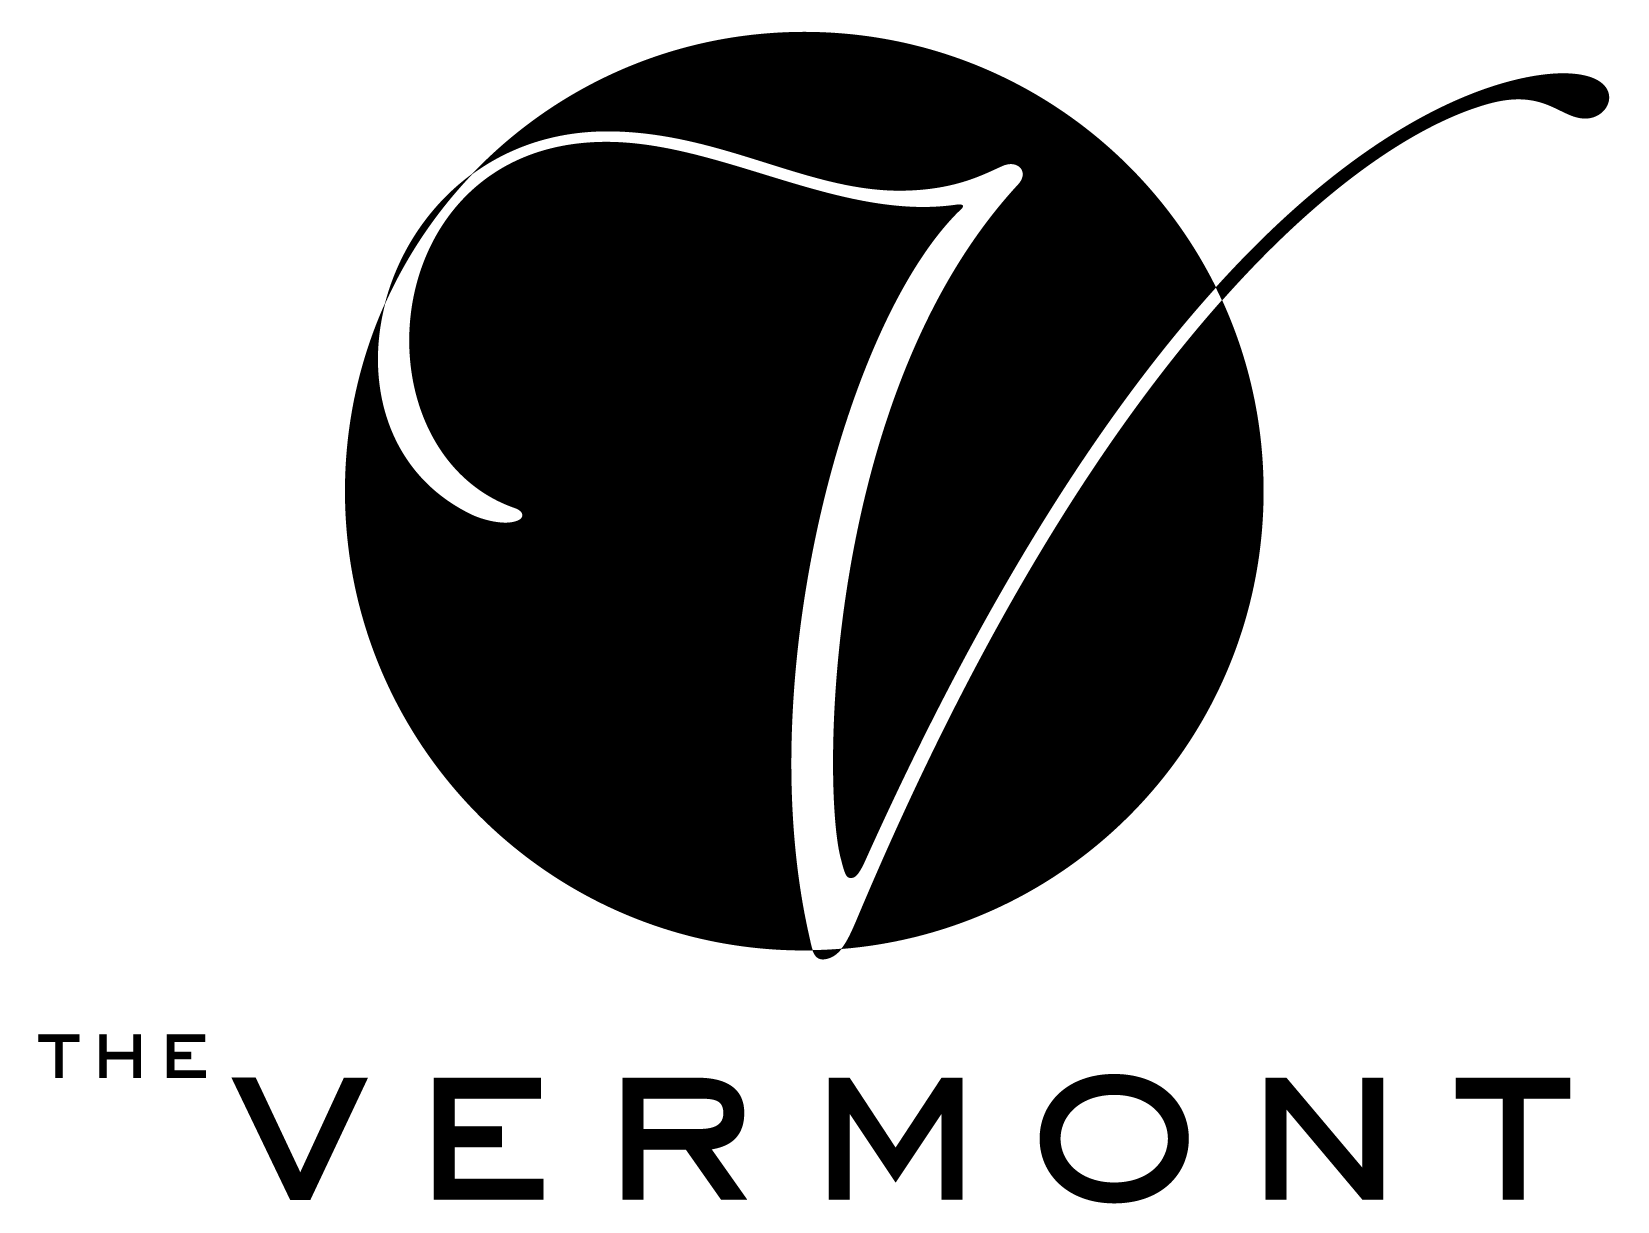 The Vermont Logo